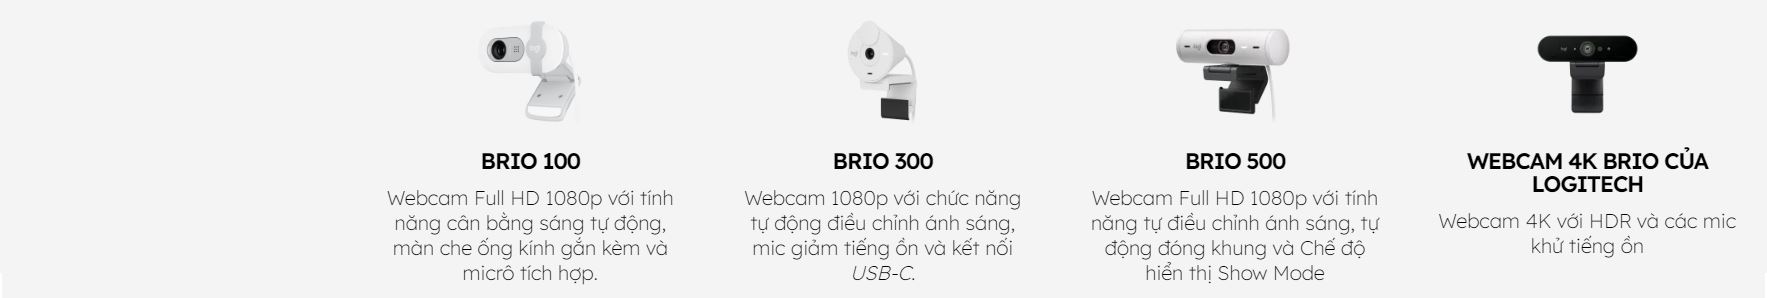 Webcam Logitech BRIO series